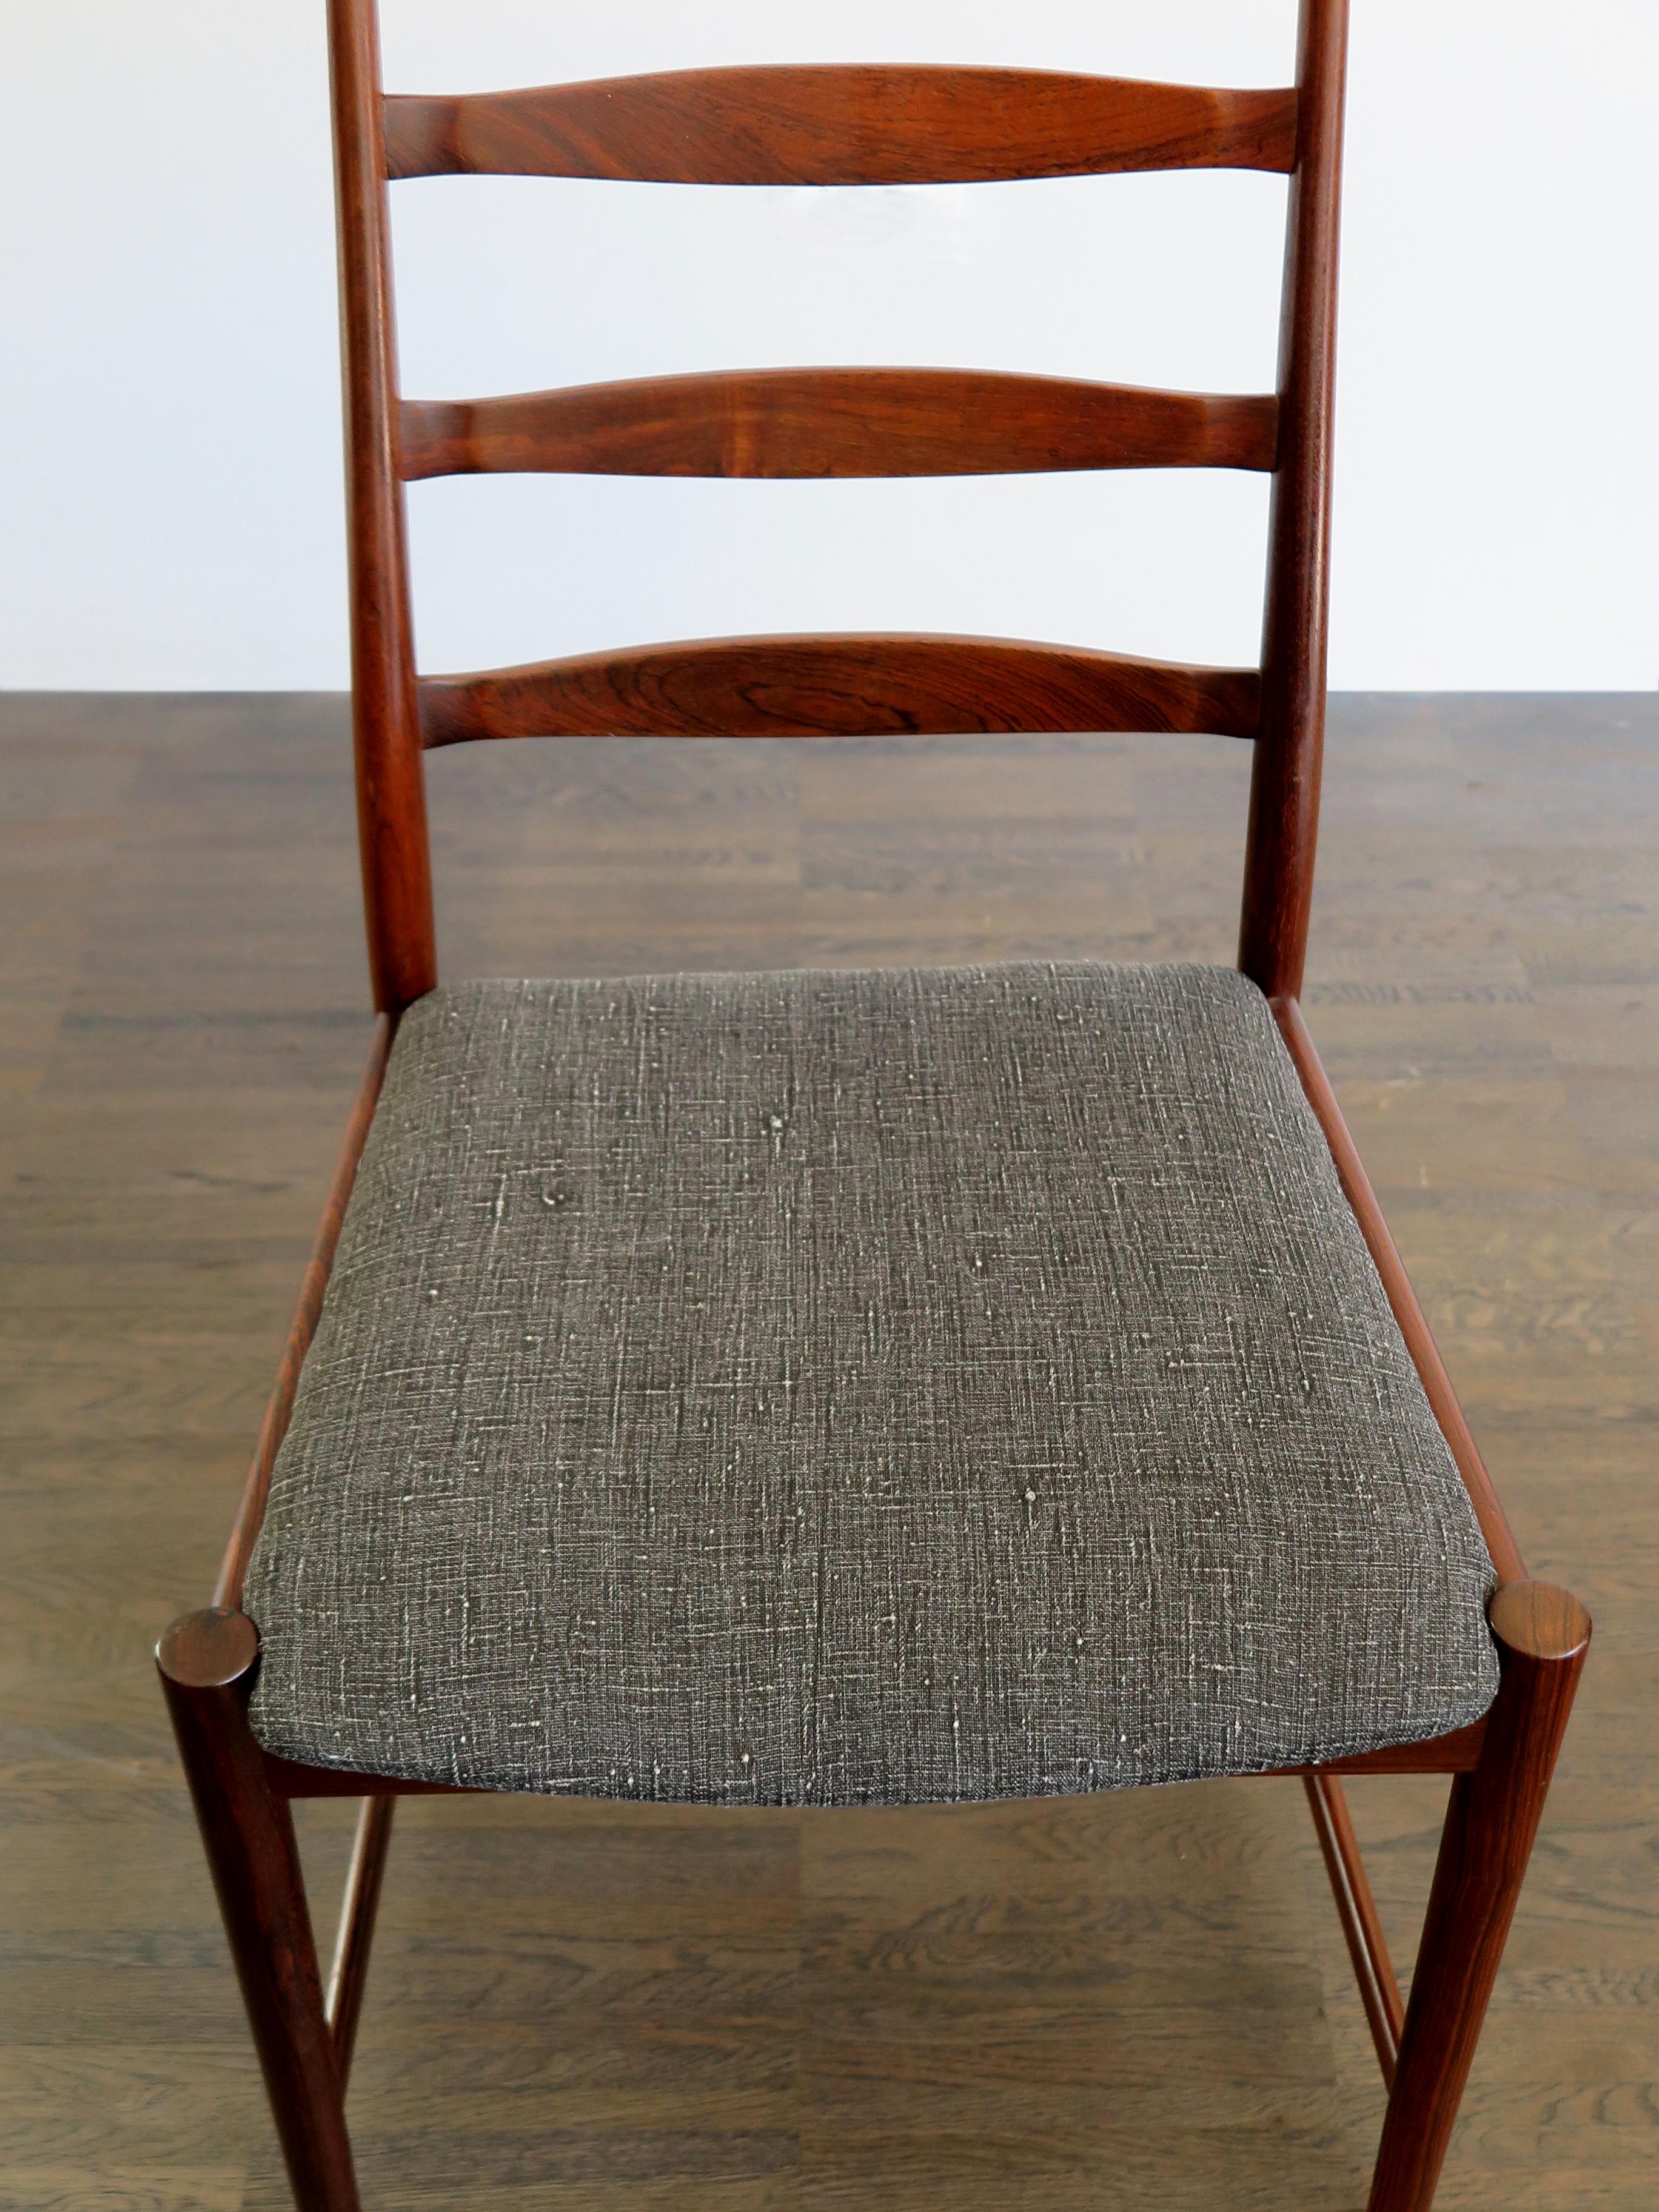 Arne Vodder Mid-Century Modern Scandinavian Dark Wood Dining Chairs, 1960s For Sale 3